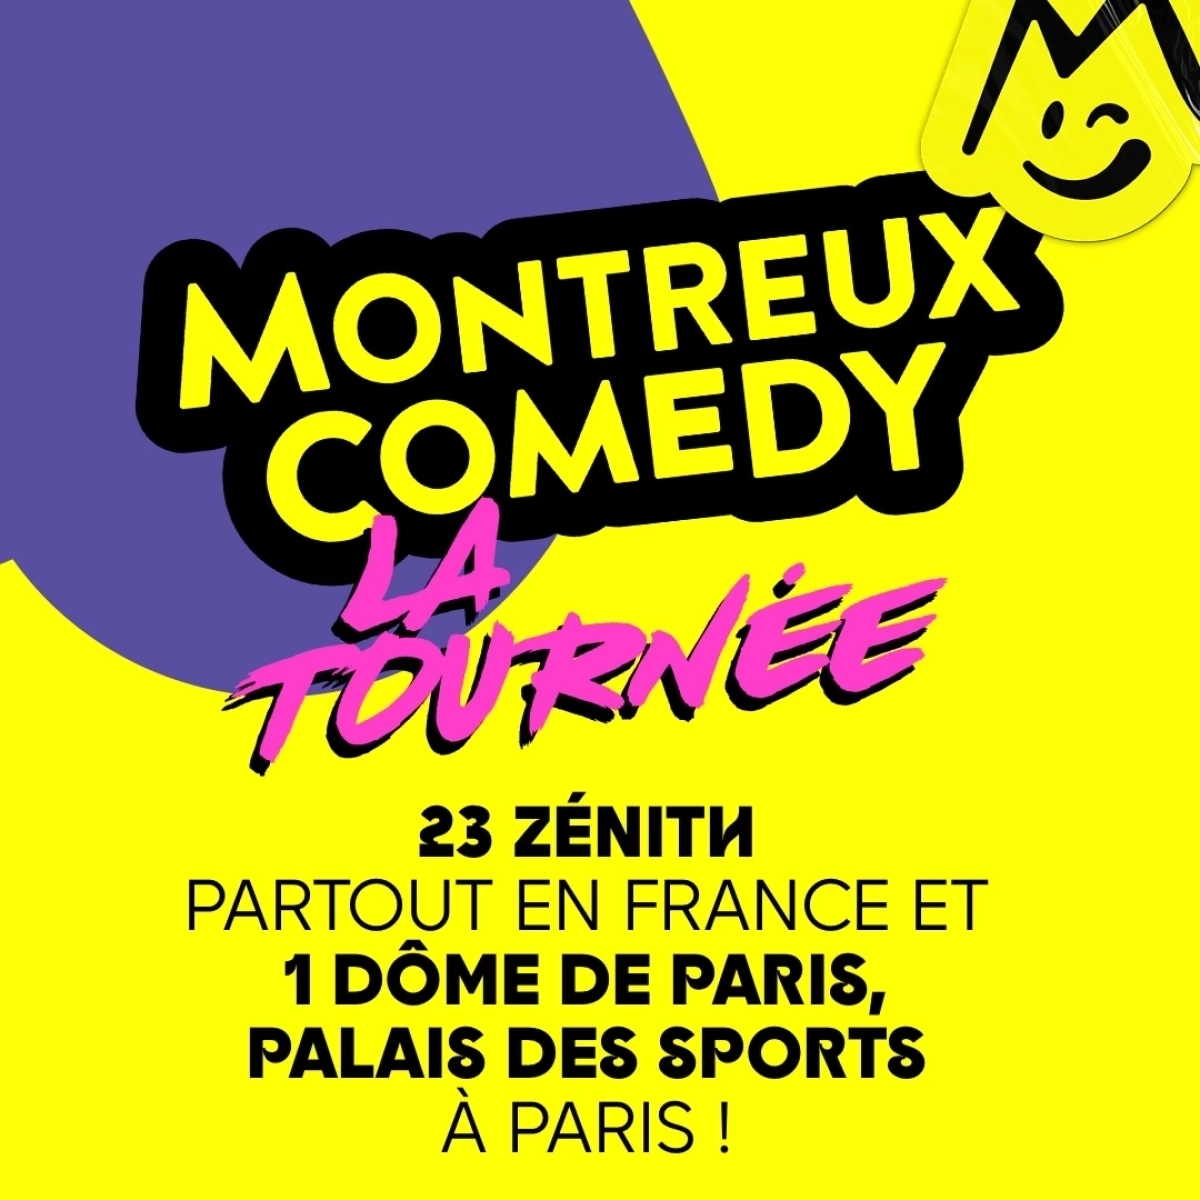 Montreux Comedy - La Tournée at Reims Arena Tickets